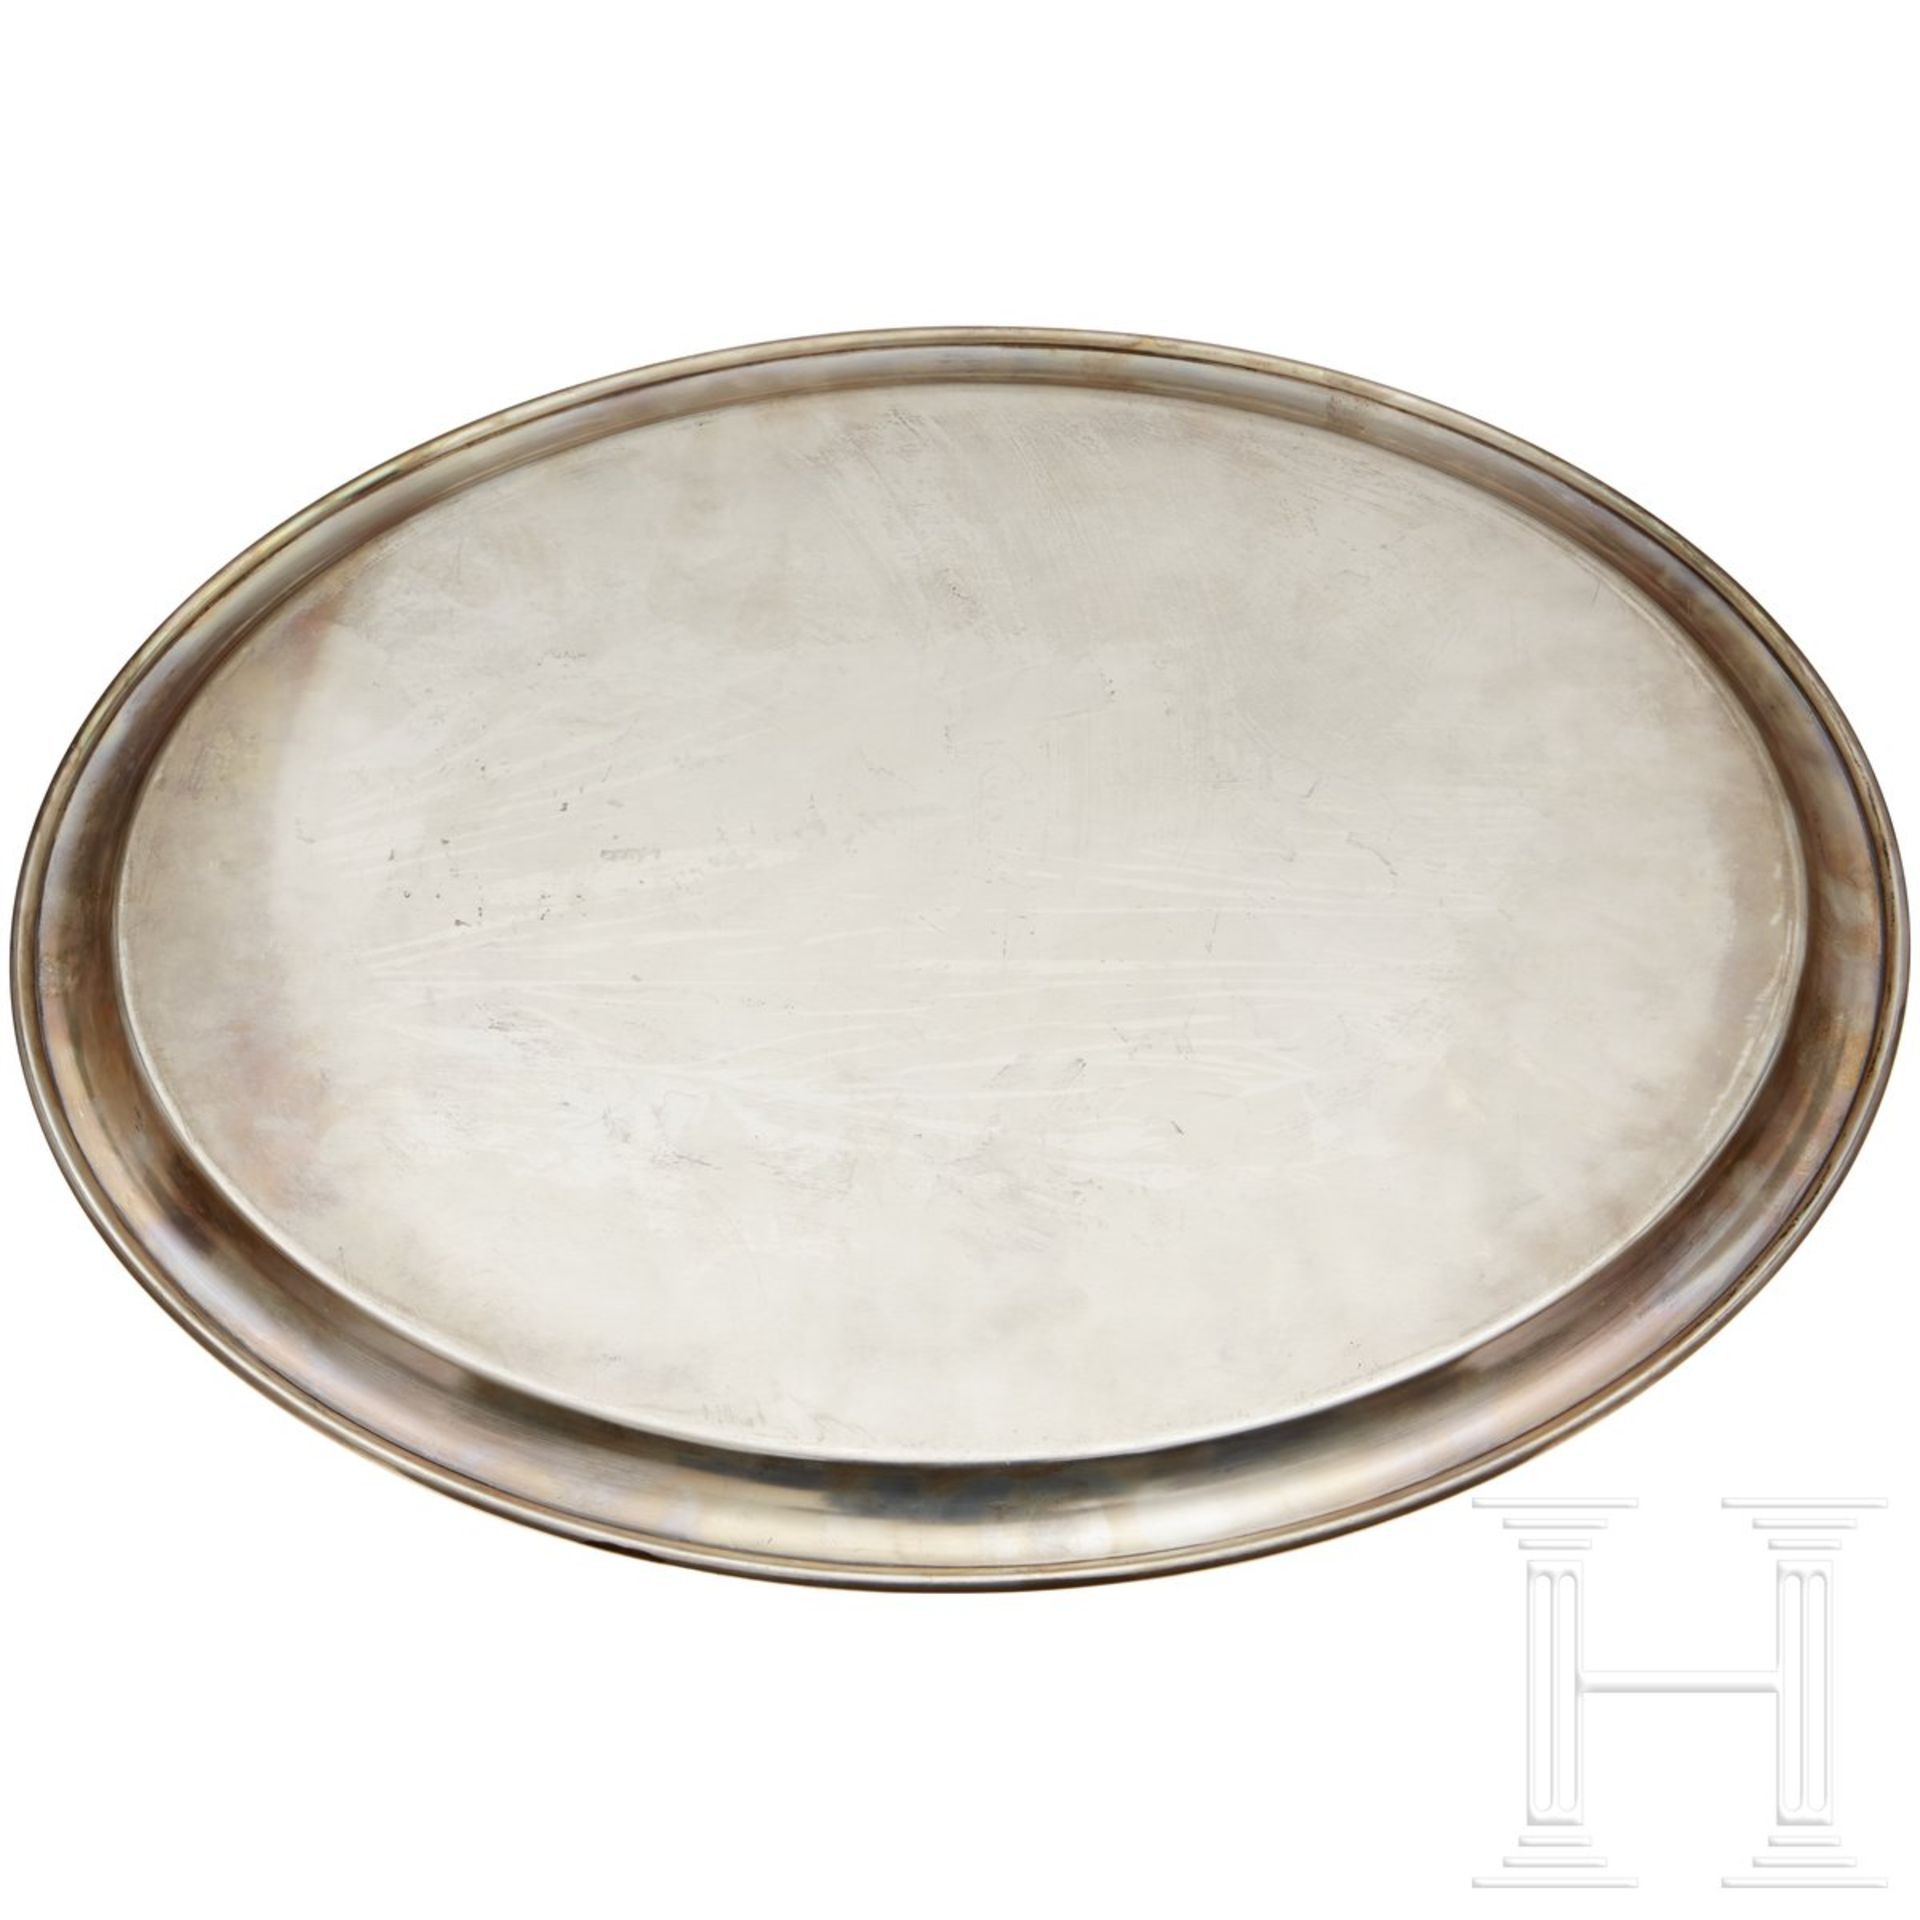 An oval Serving Platter from a Silver Service - Bild 2 aus 3